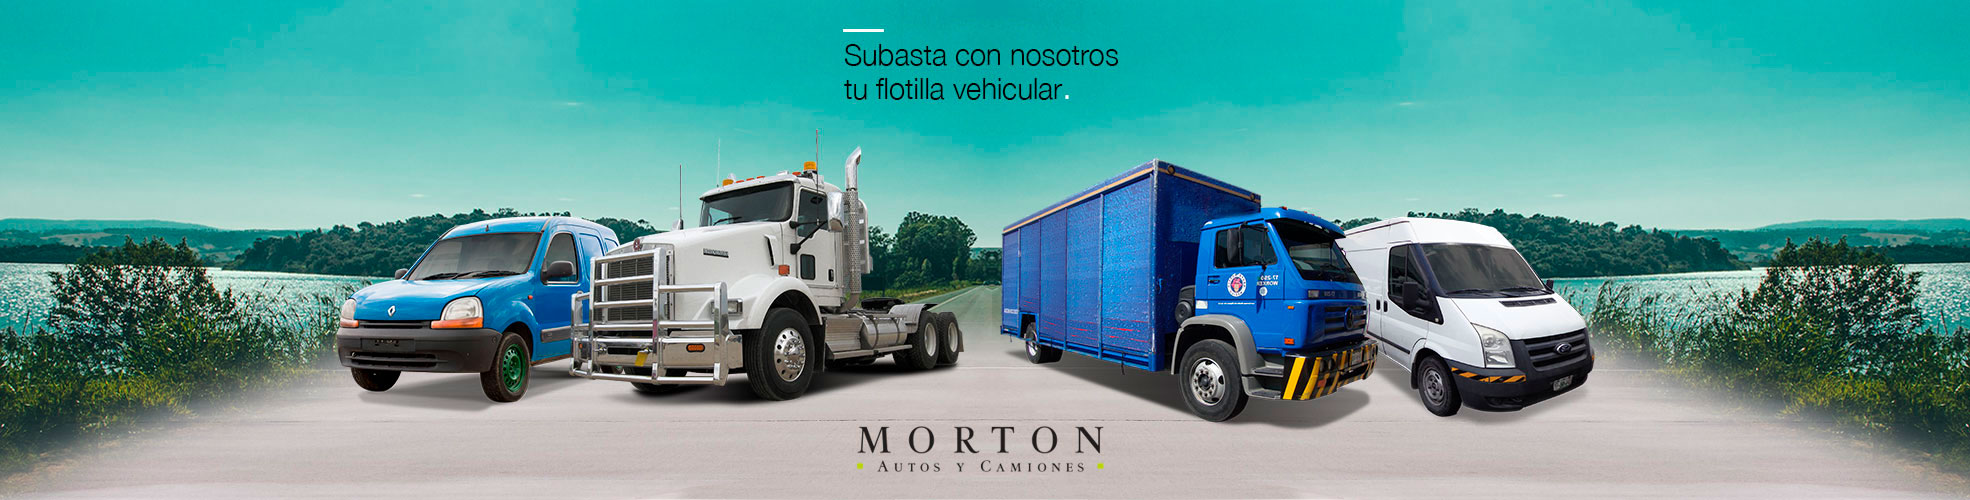 Morton Autos y Camiones